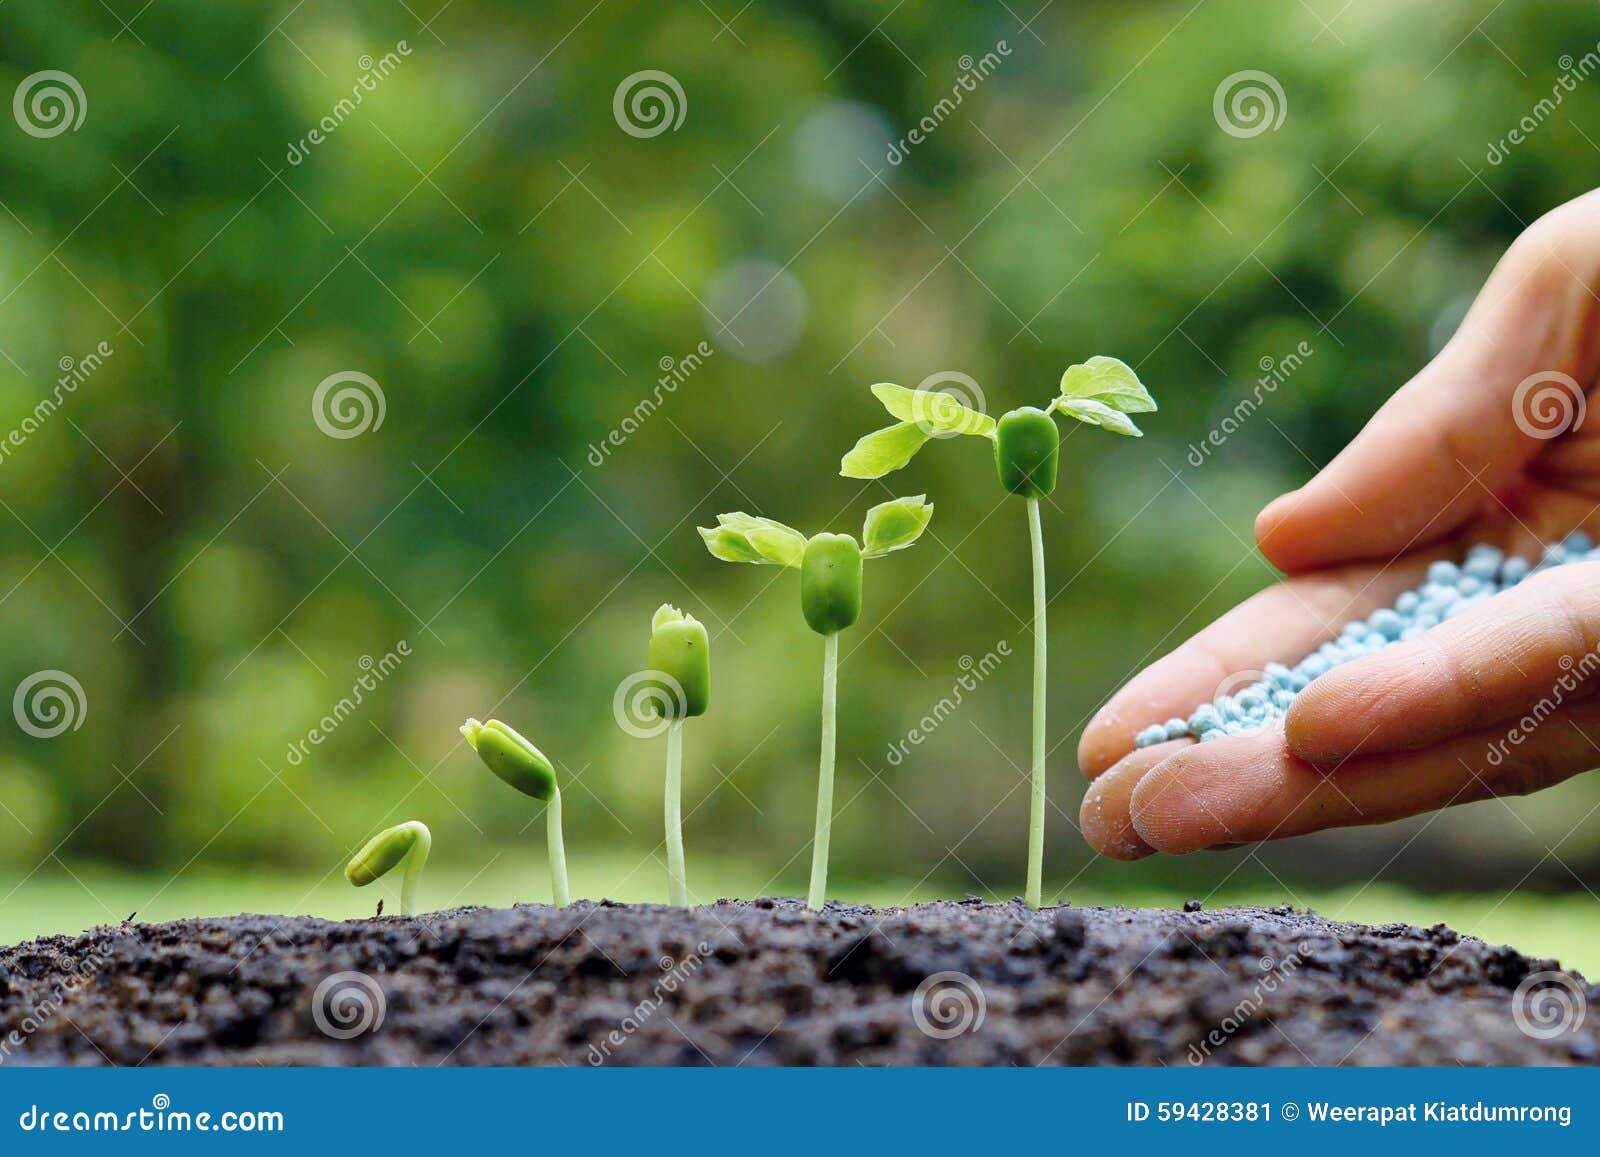 Baby Plants Seedling Stock Image Image Of Grow Light